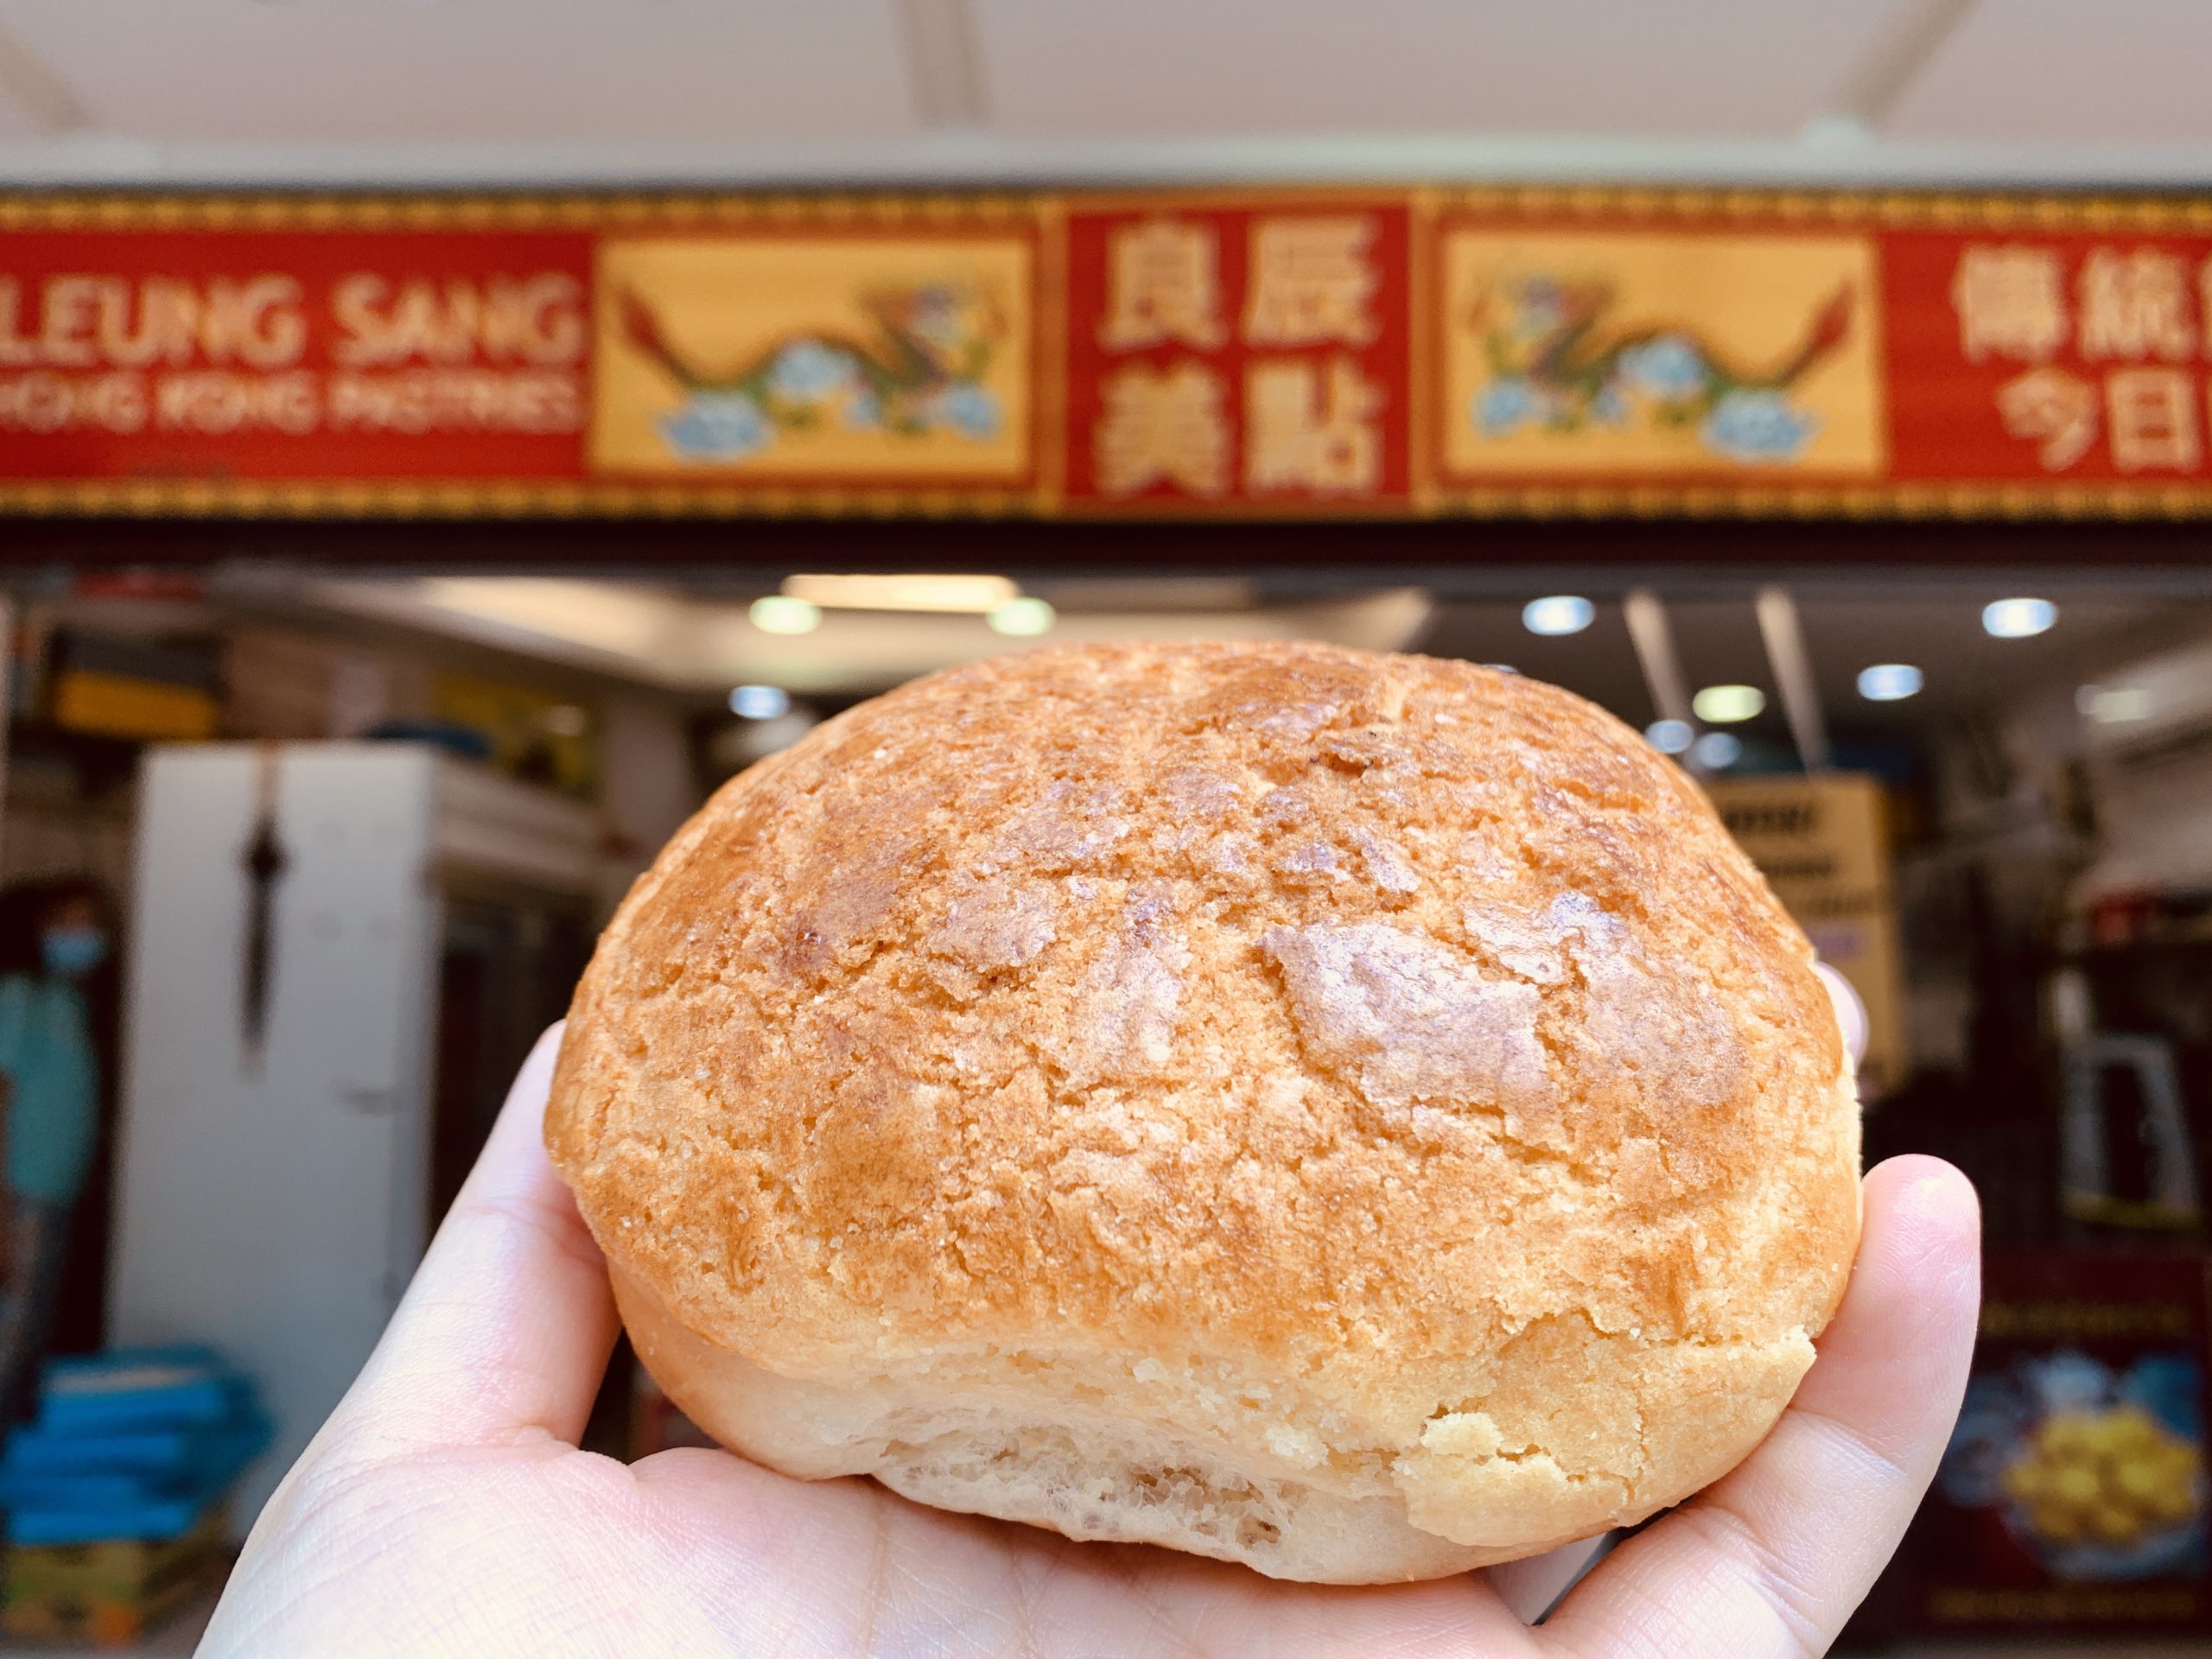 Leung Sang Hong Kong Pastries - Hong Kong Po-Lo Bun (Plain)